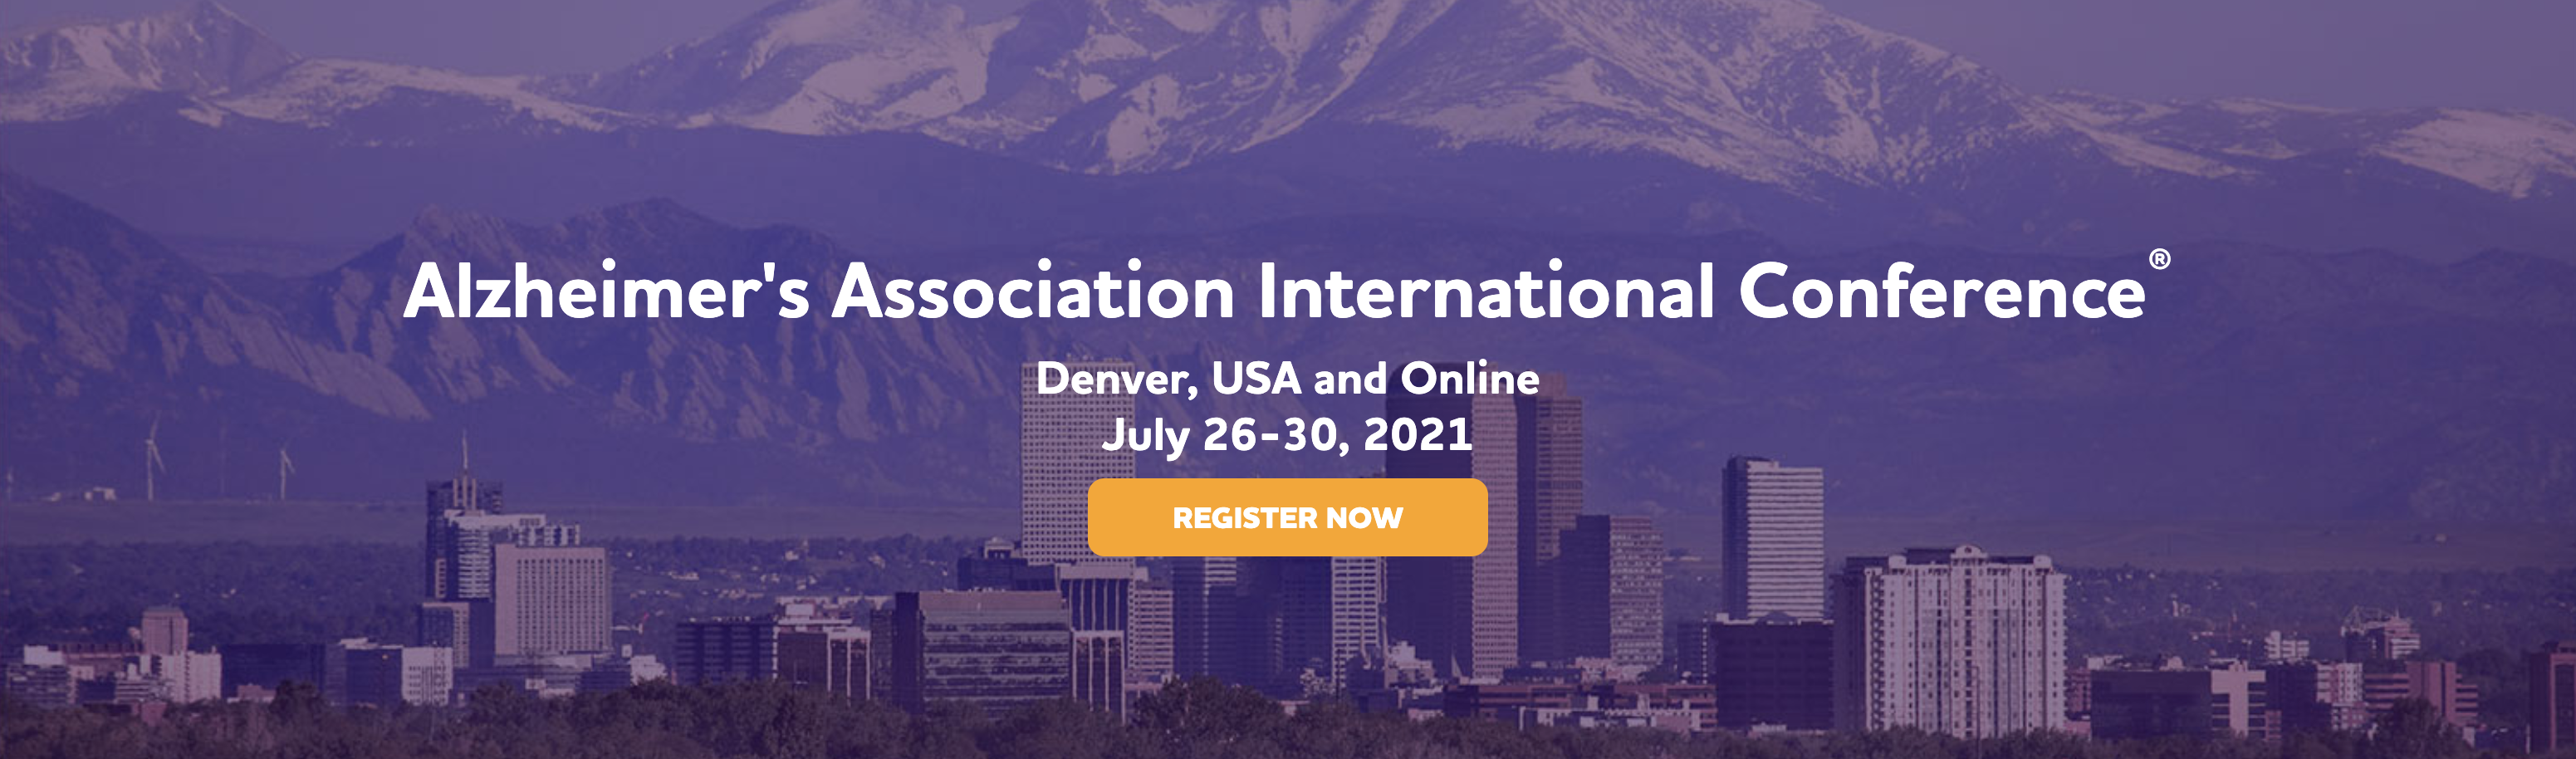 AAIC Conference 2021 Denver header image